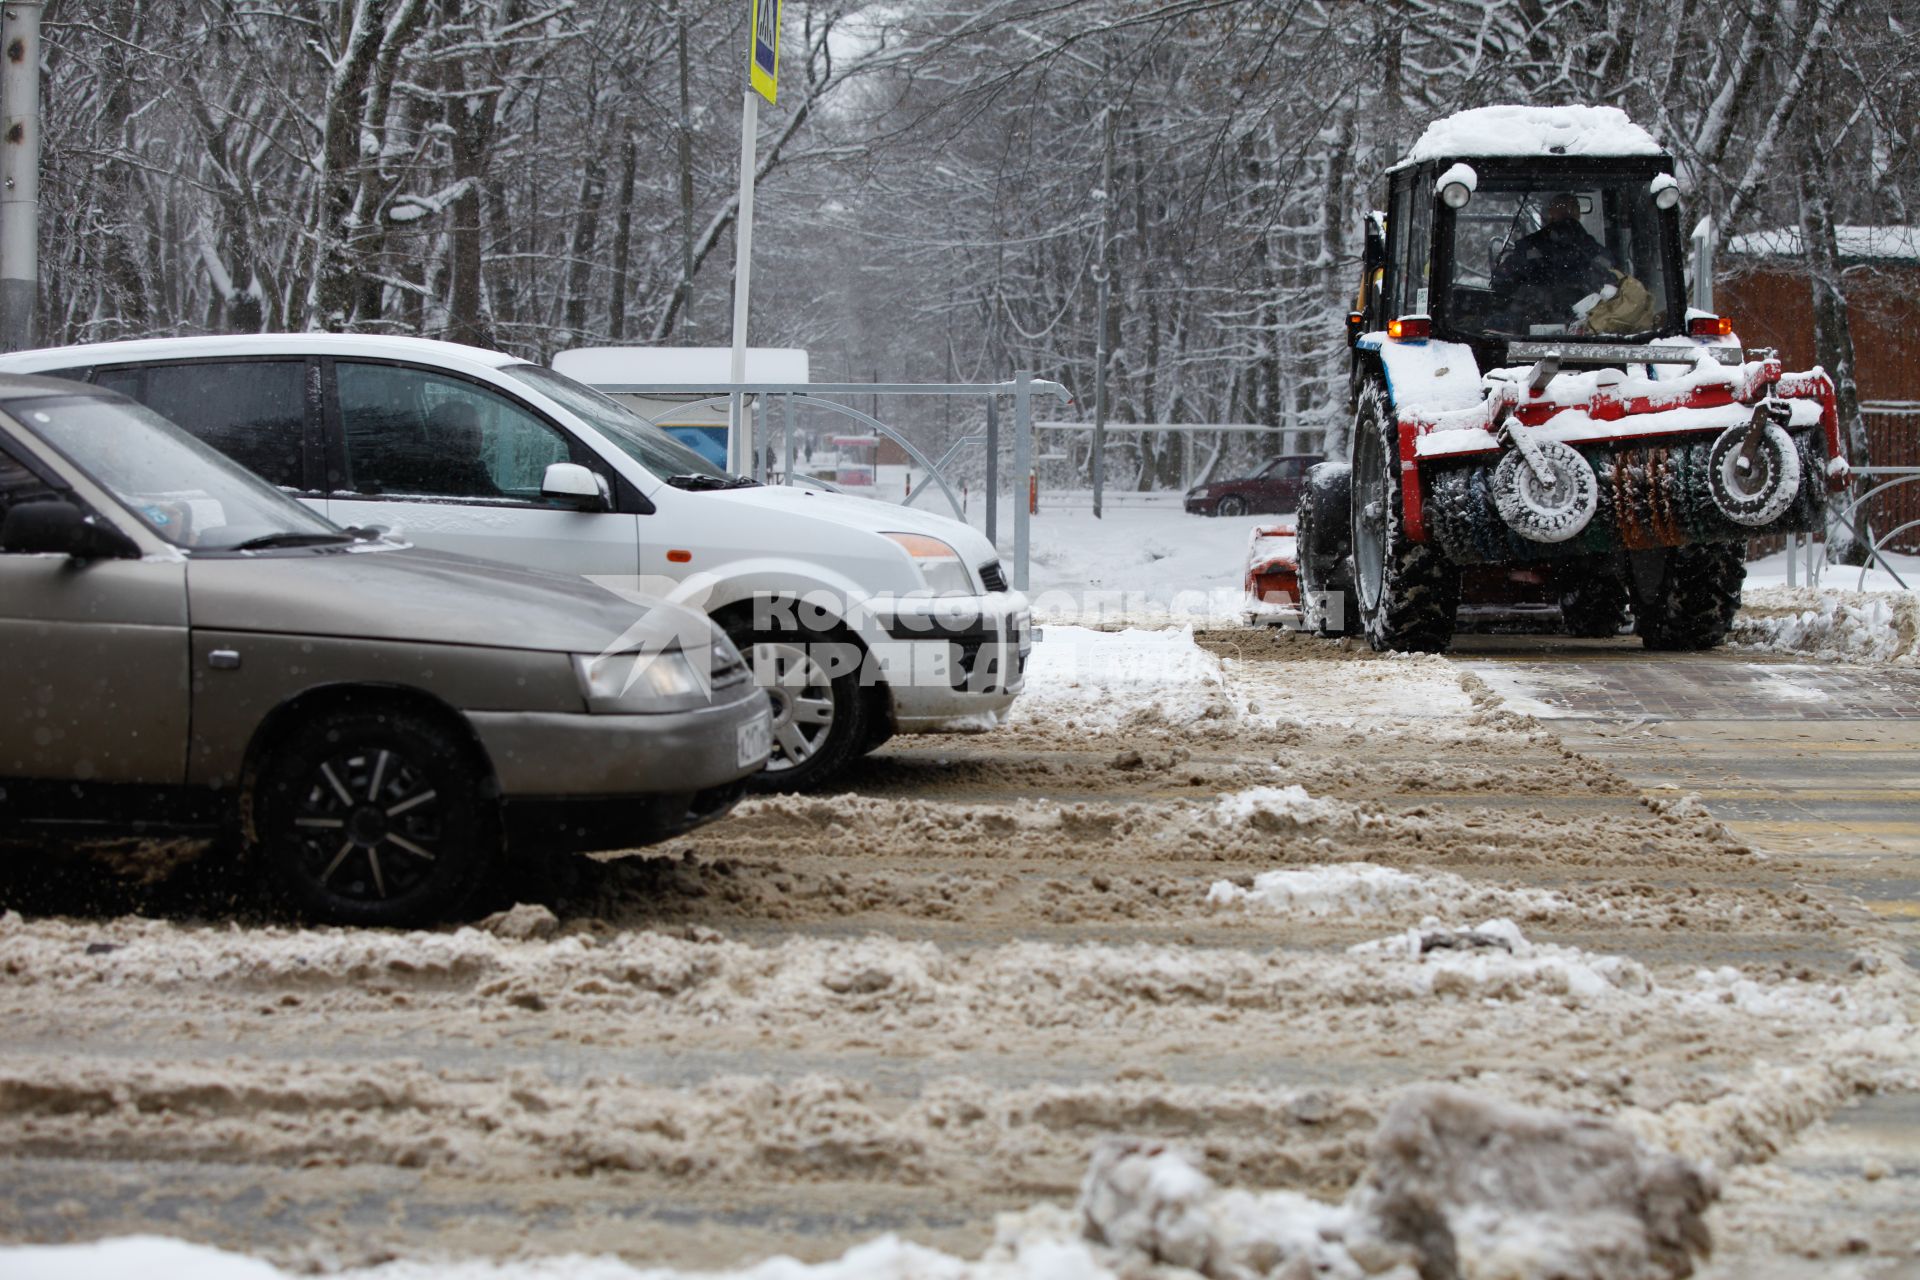 Ставрополь. Работник коммунальных служб на тракторе чистит дорогу от снега.